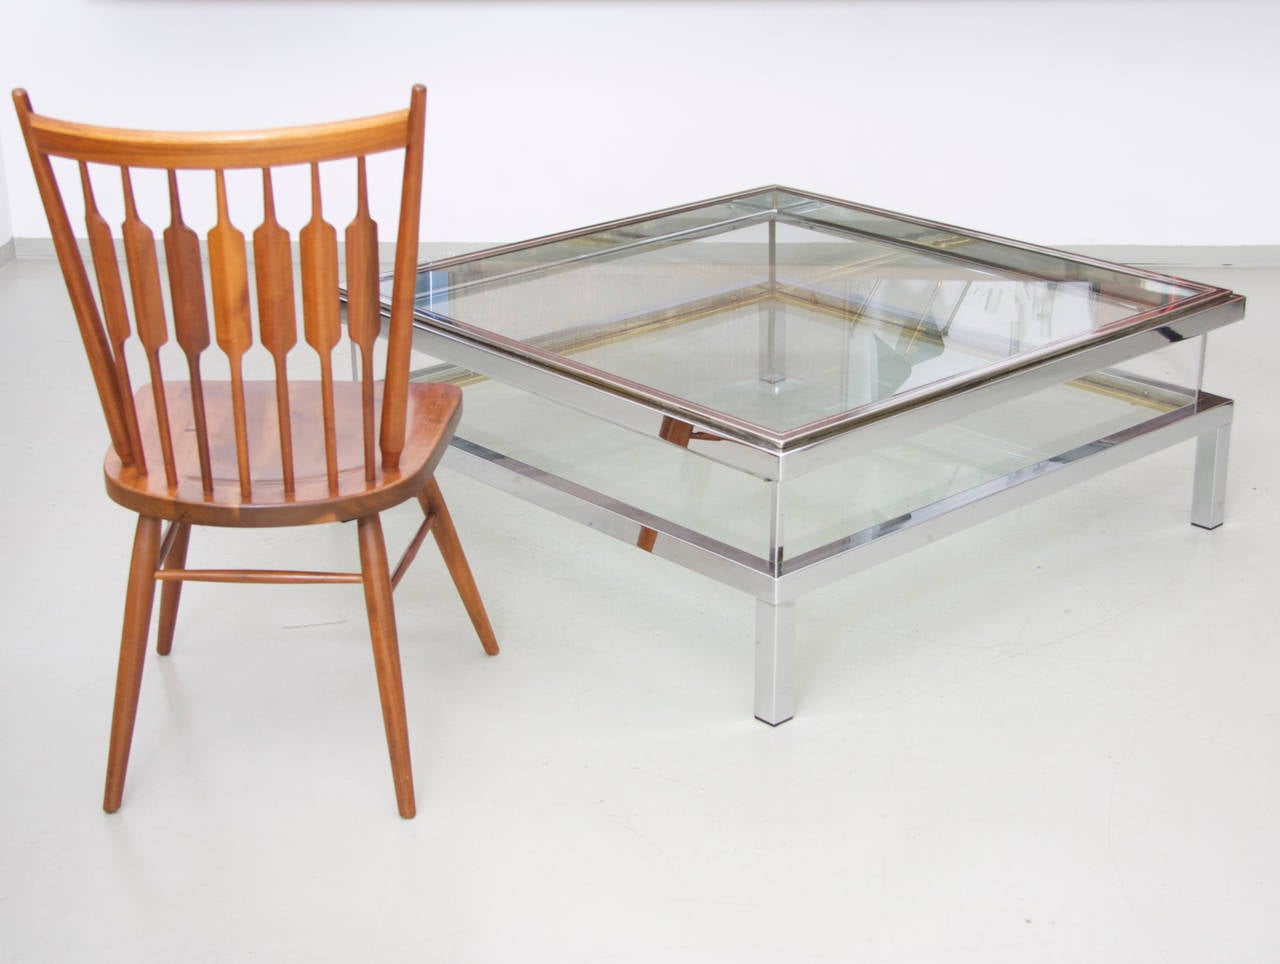 Großer quadratischer Glastisch mit Schiebeplatte von Maison Jansen. Der Rahmen hat eine originale verchromte Metalloberfläche mit schöner Alterung.

